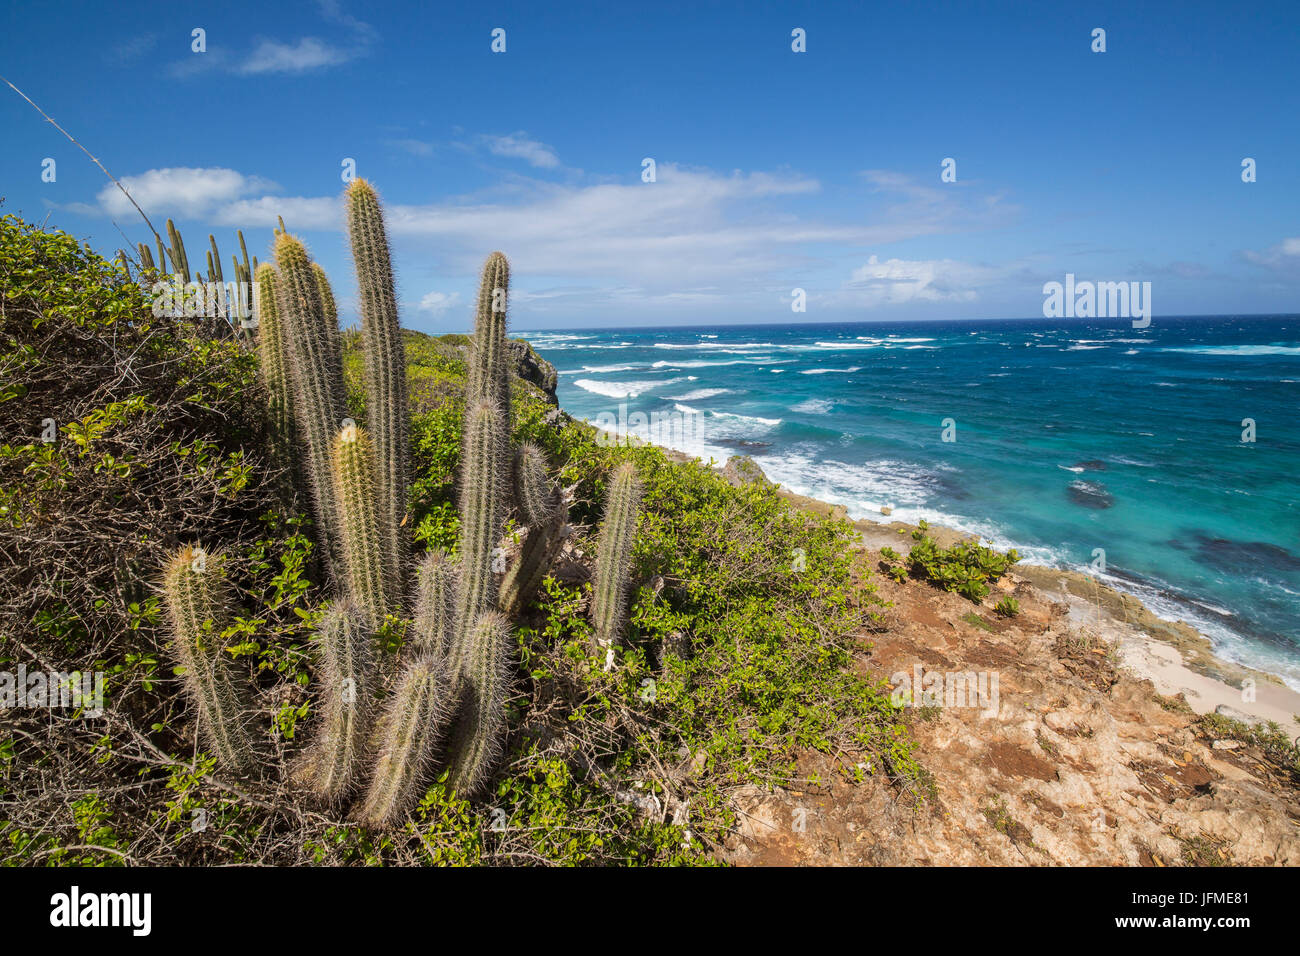 Cactus et plantes entourent le turquoise de la mer des Caraïbes La Grotte Antigua et Barbuda Antilles Îles sous le vent Banque D'Images